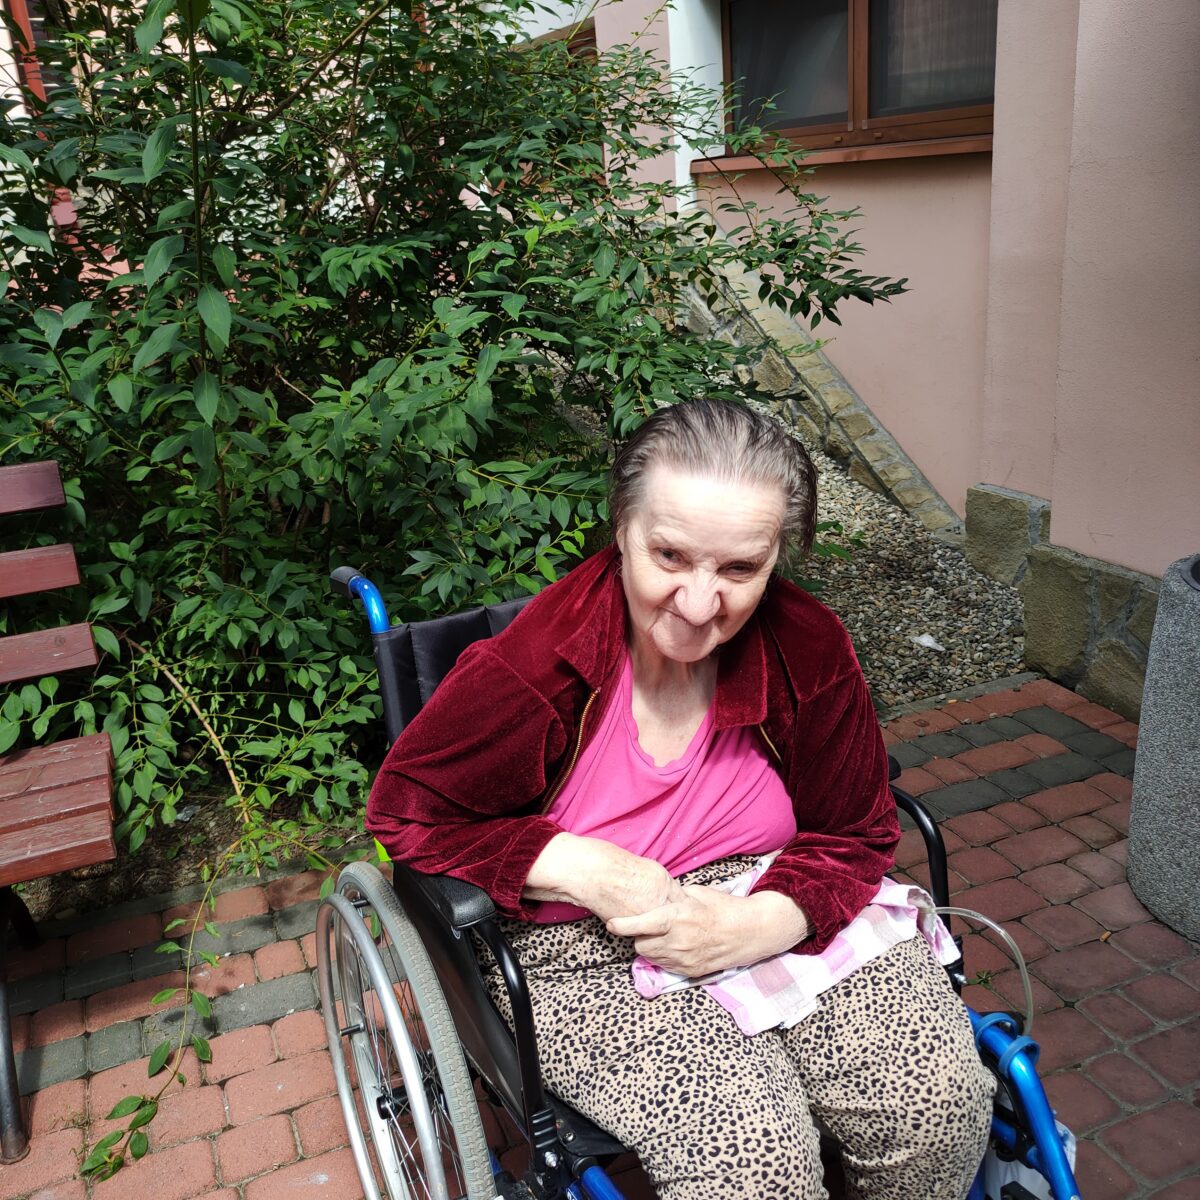 Kobieta na wózku inwalidzkim uśmiecha się, za nią widać zielony krzew i kawałek budynku.